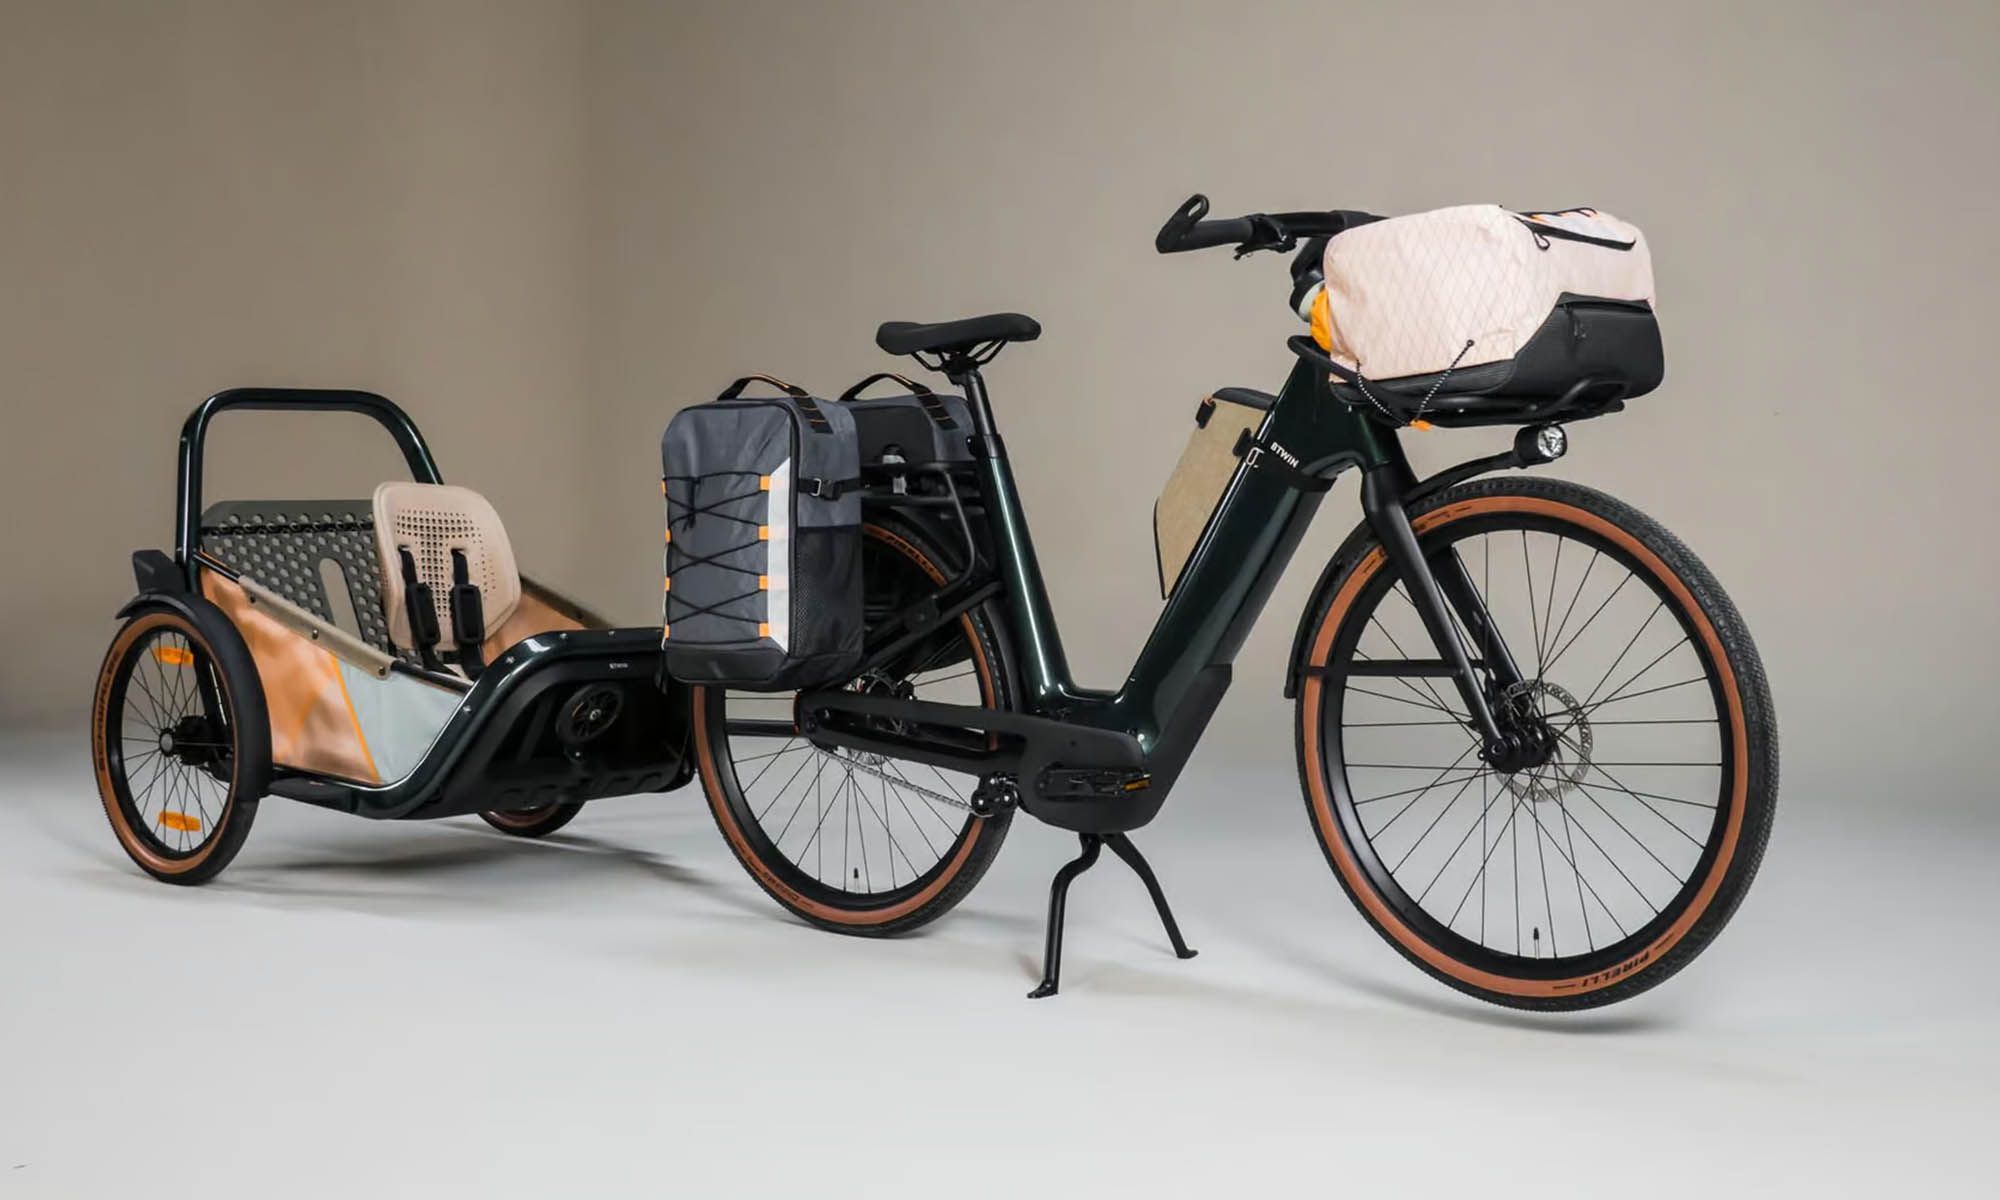 La bicicleta eléctrica Magic Bike 02 es la vista previa de Decathlon para sus futuros diseños.